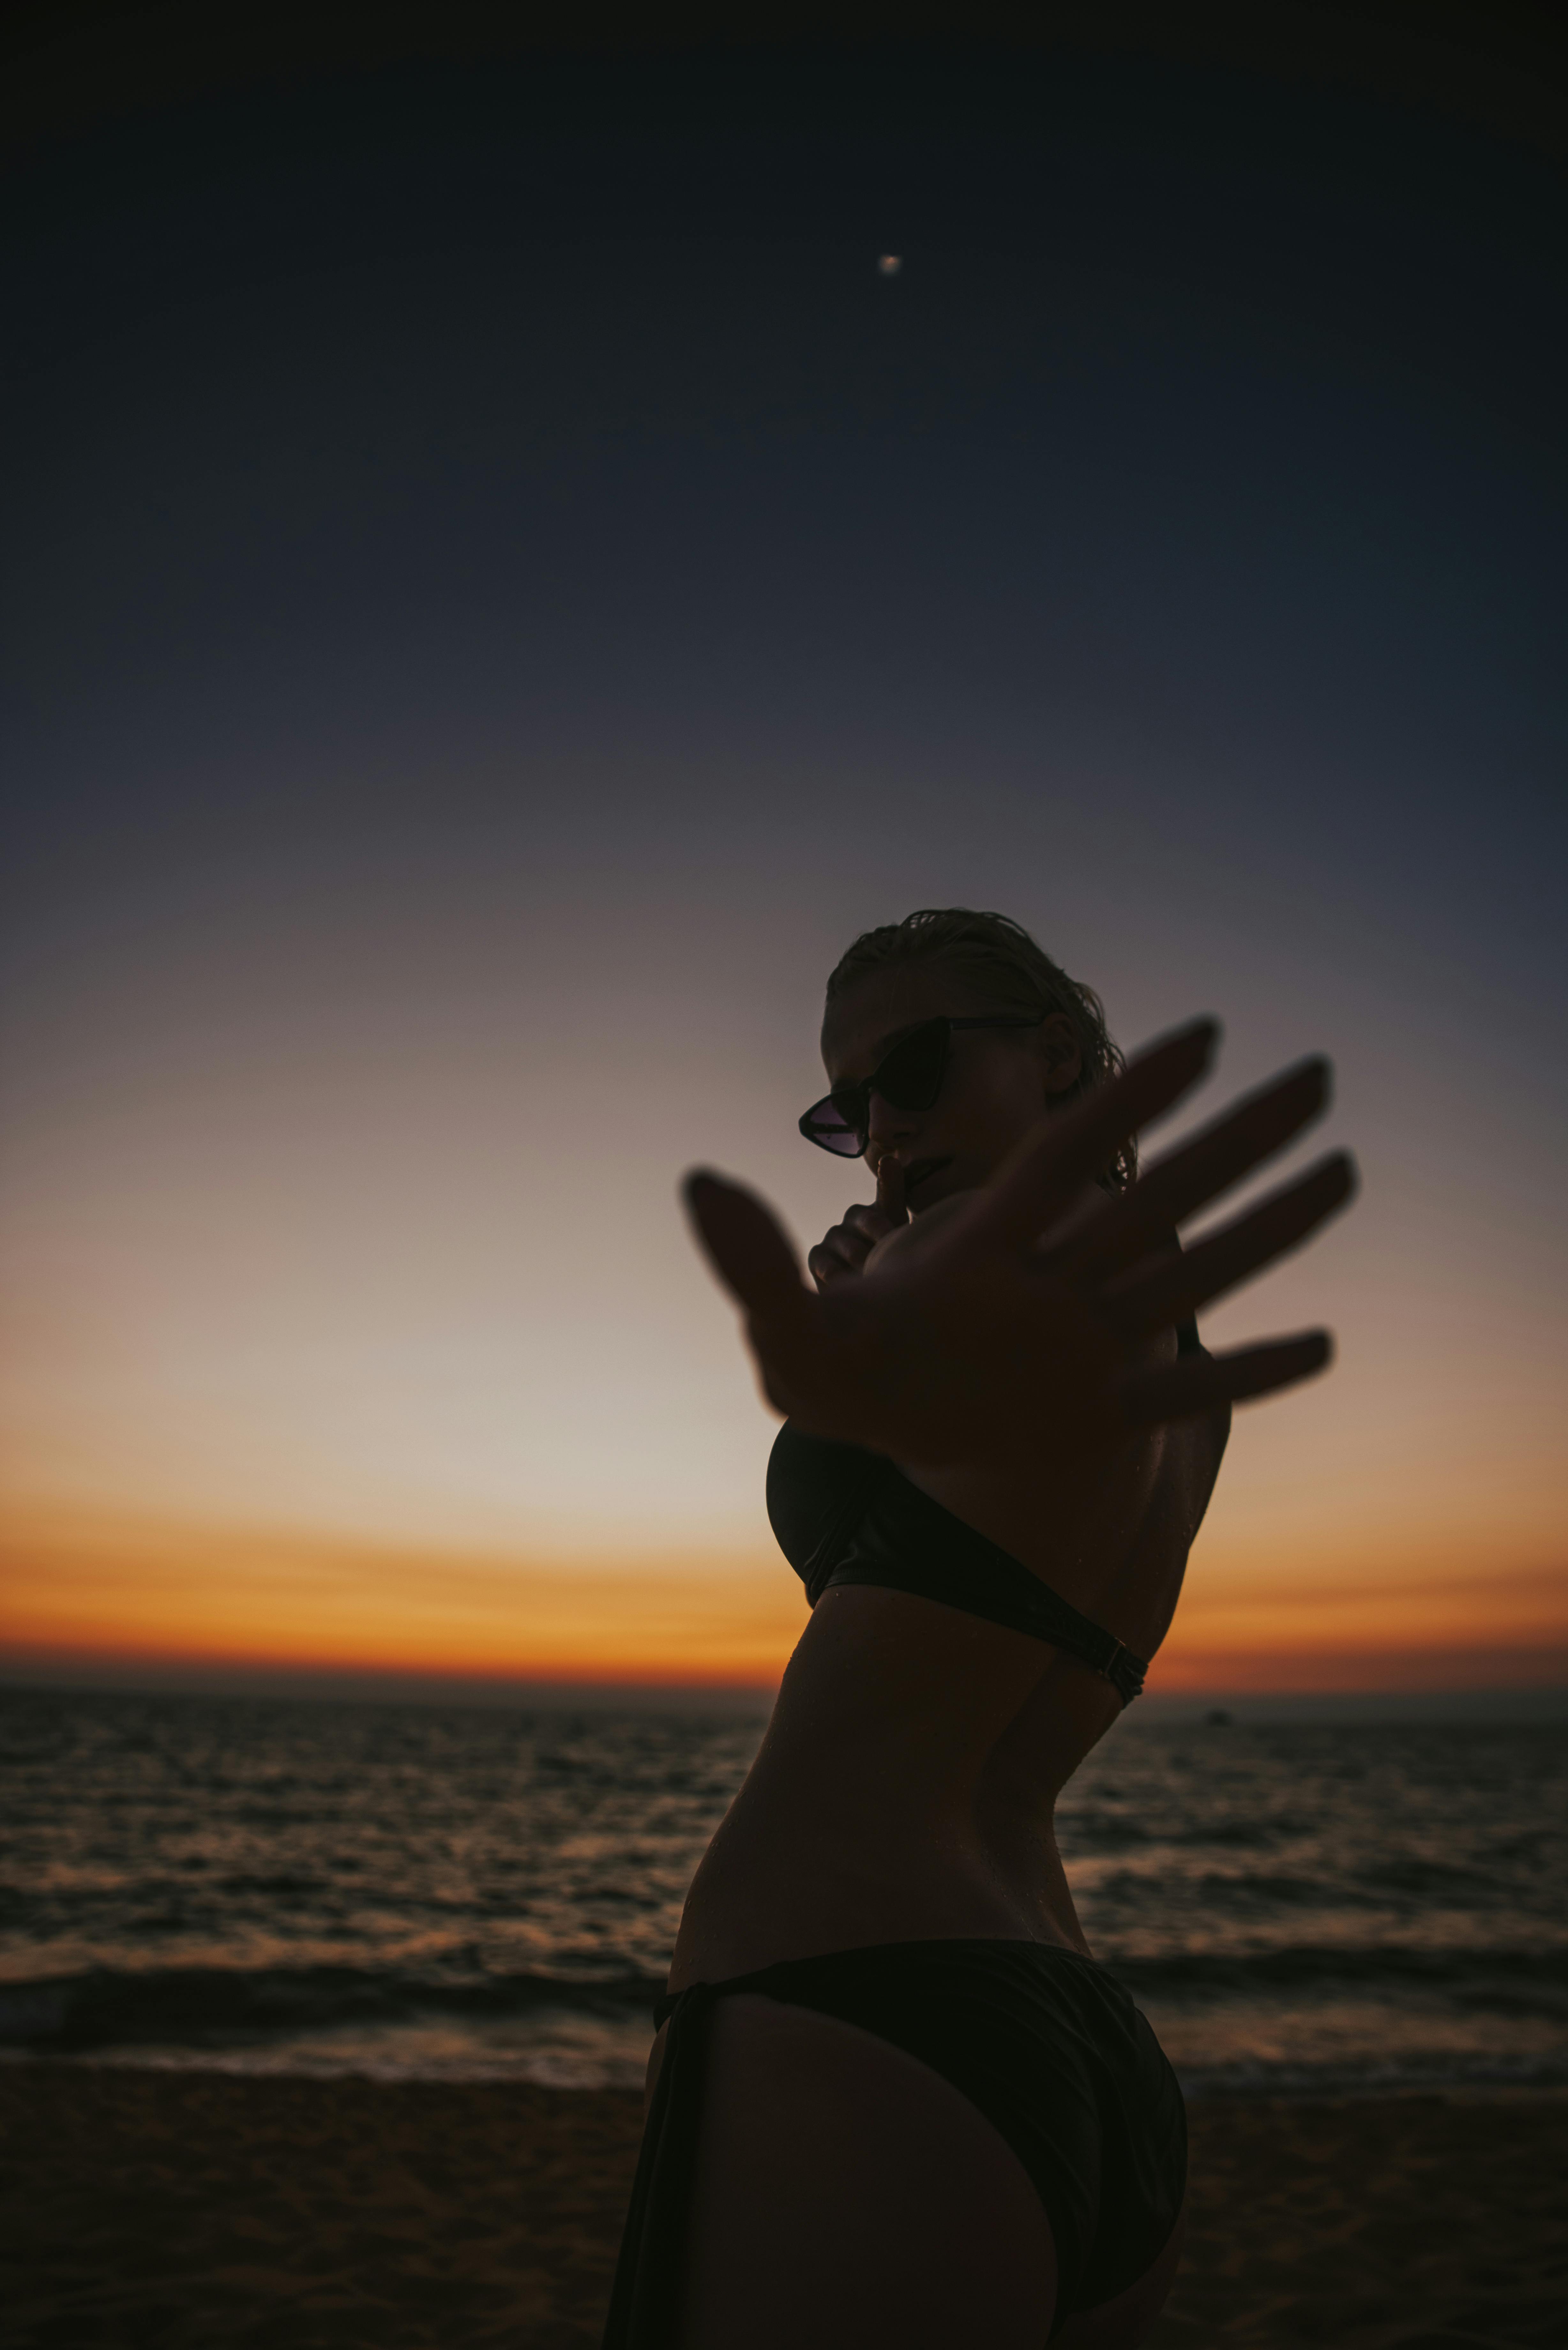 Beach Couple Poses Ideas | Girlfriend-Boyfriend Sunset Photoshoot Ideas On  Beach - Part 2 - YouTube